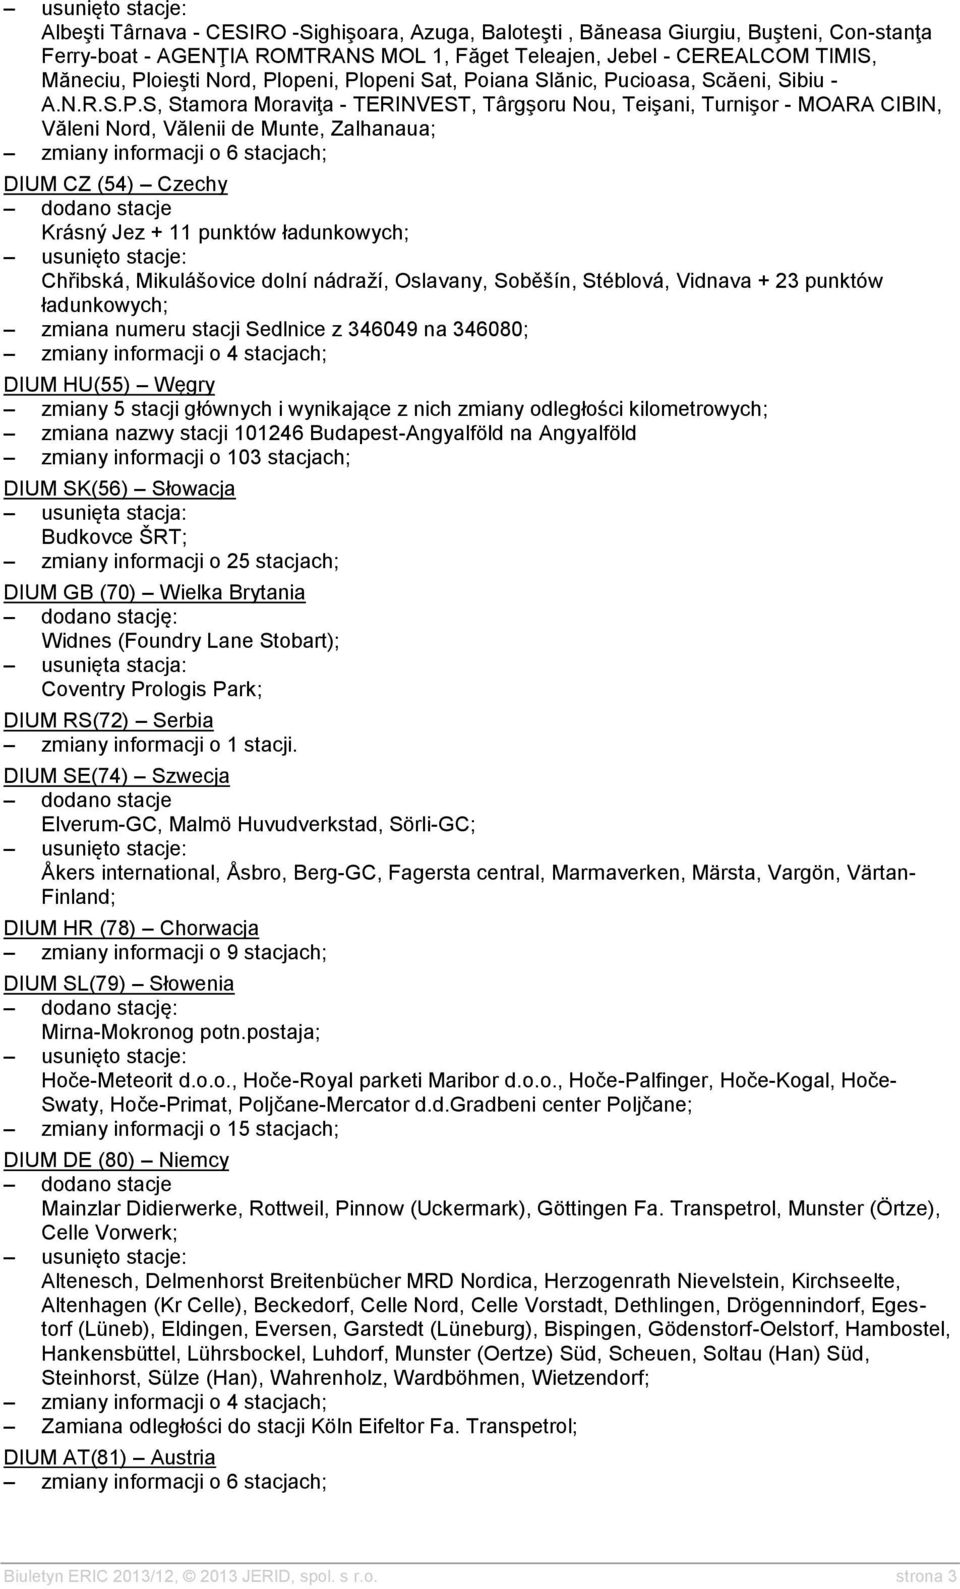 zmiany informacji o 6 stacjach; DIUM CZ (54) Czechy Krásný Jez + 11 punktów ładunkowych; Chřibská, Mikulášovice dolní nádraží, Oslavany, Soběšín, Stéblová, Vidnava + 23 punktów ładunkowych; zmiana